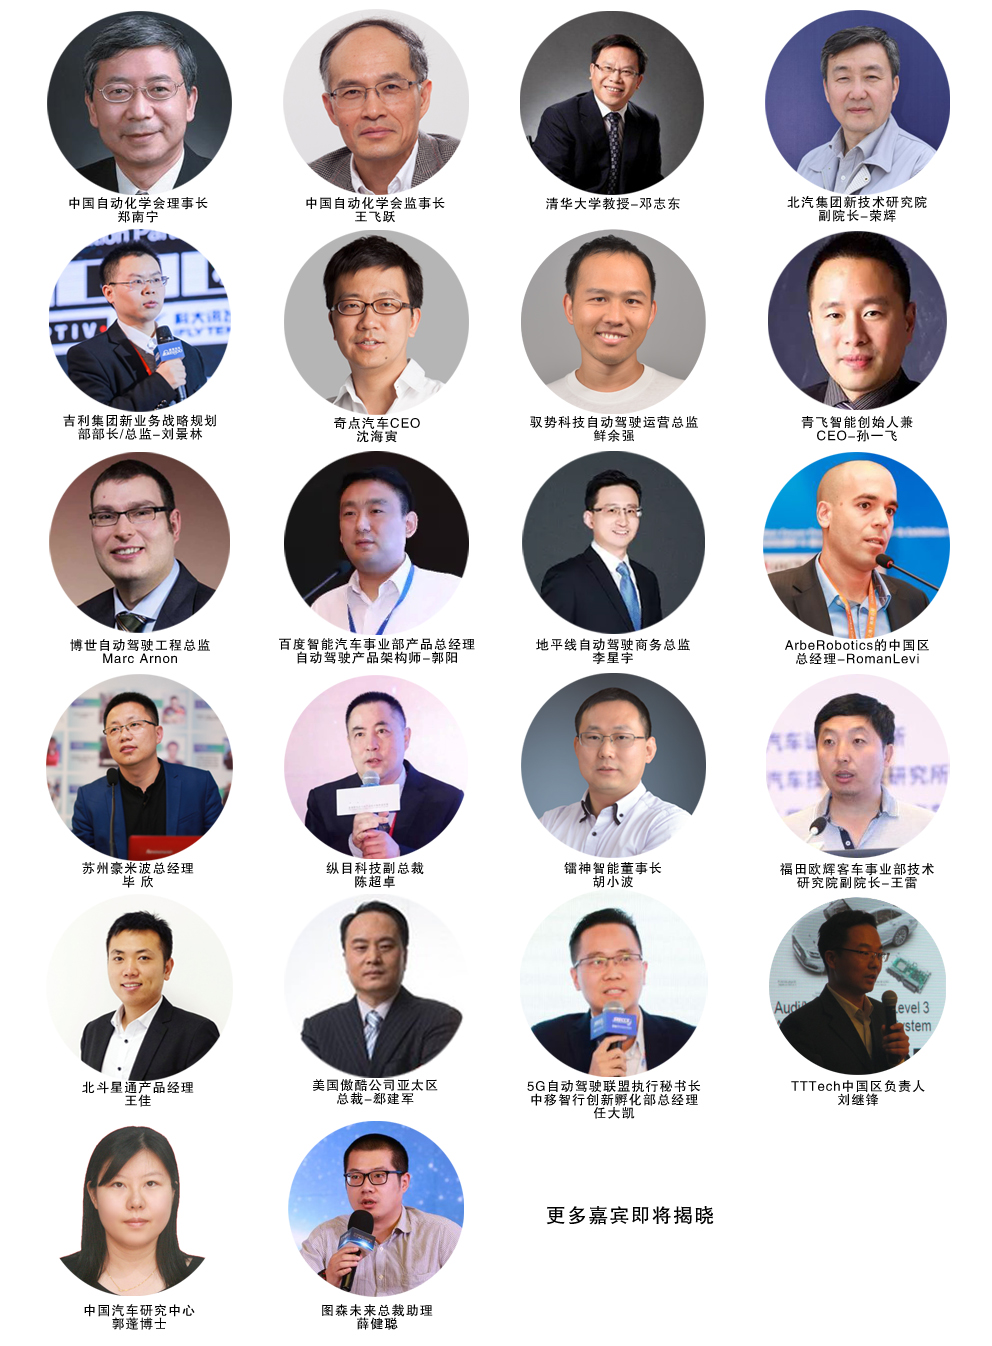 2019第三届国际智能驾驶与无人驾驶大会（上海）